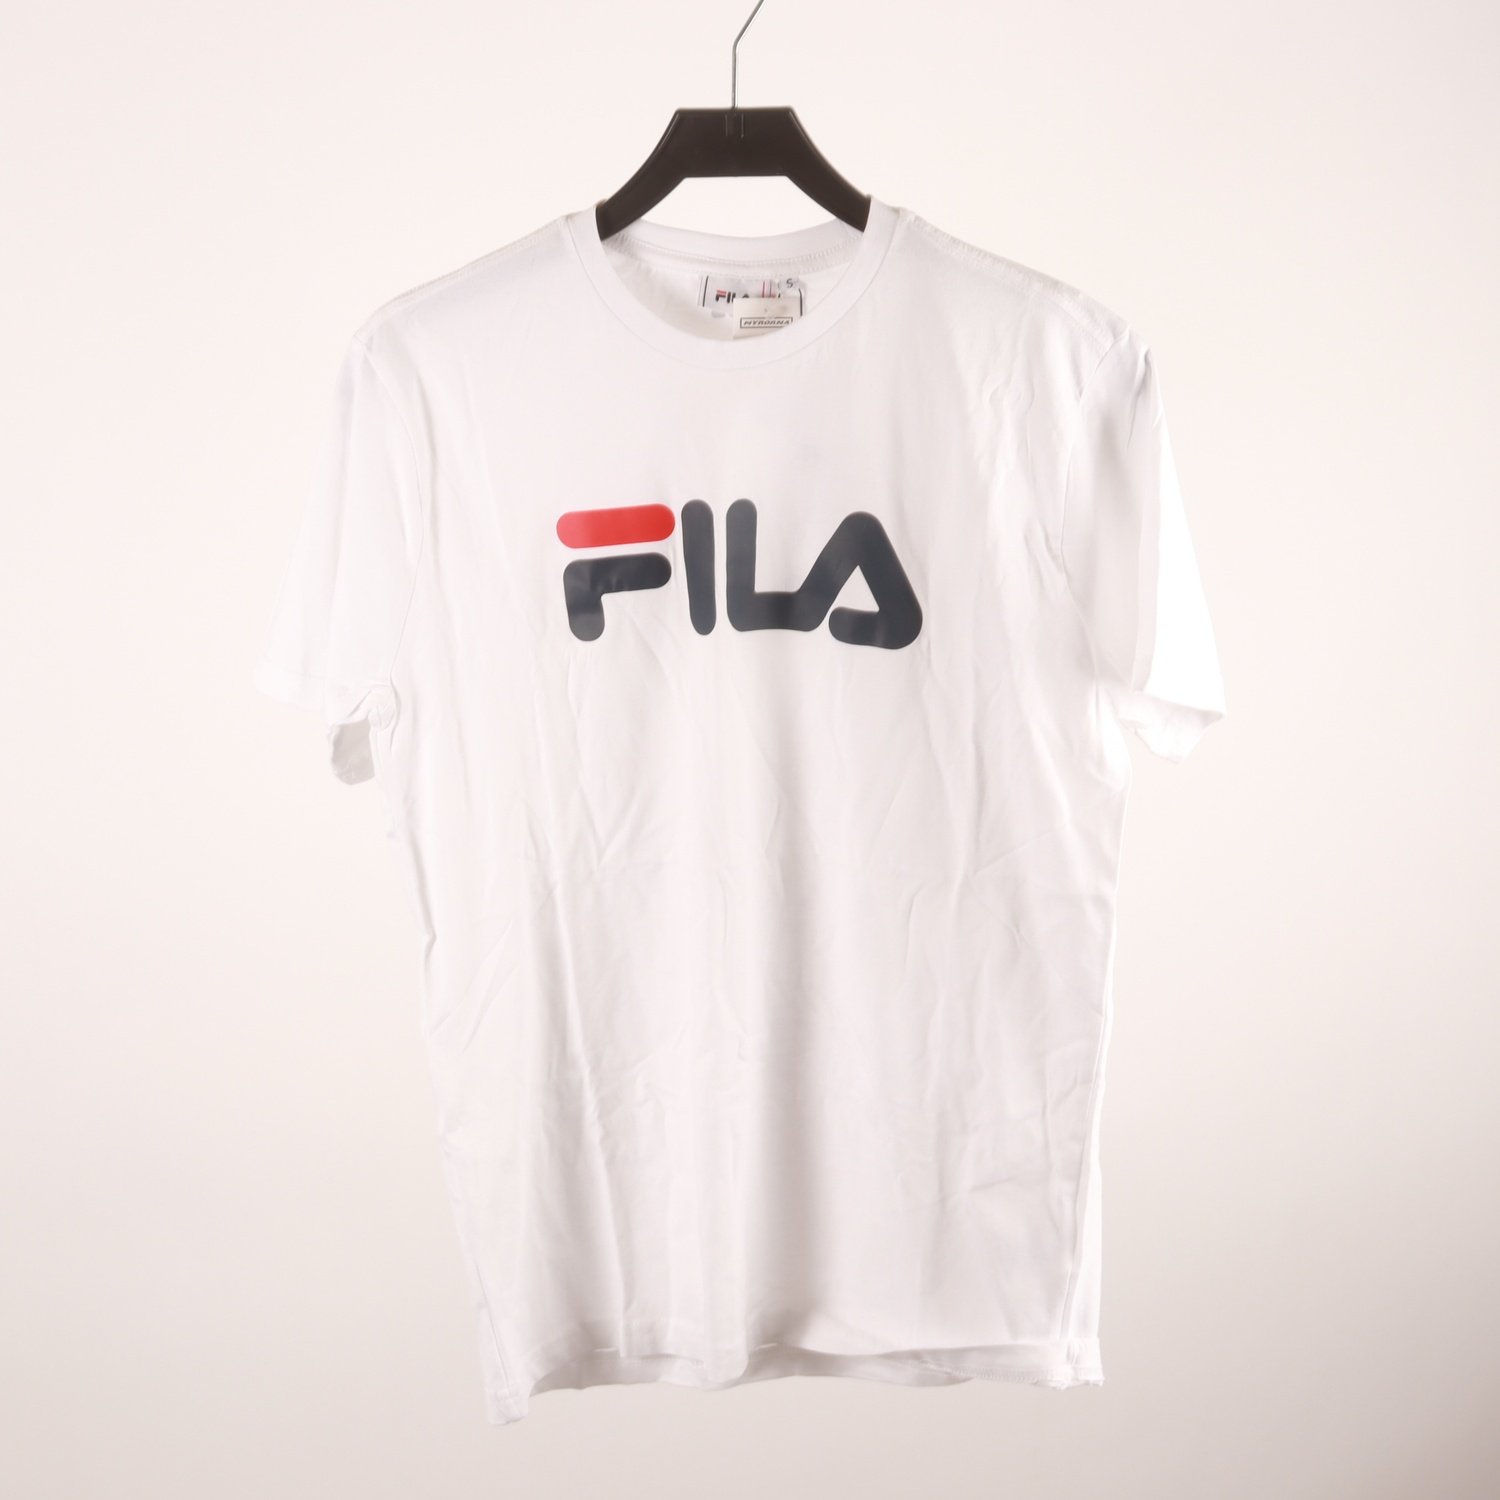 T-shirt, FILA, vit, stl. S